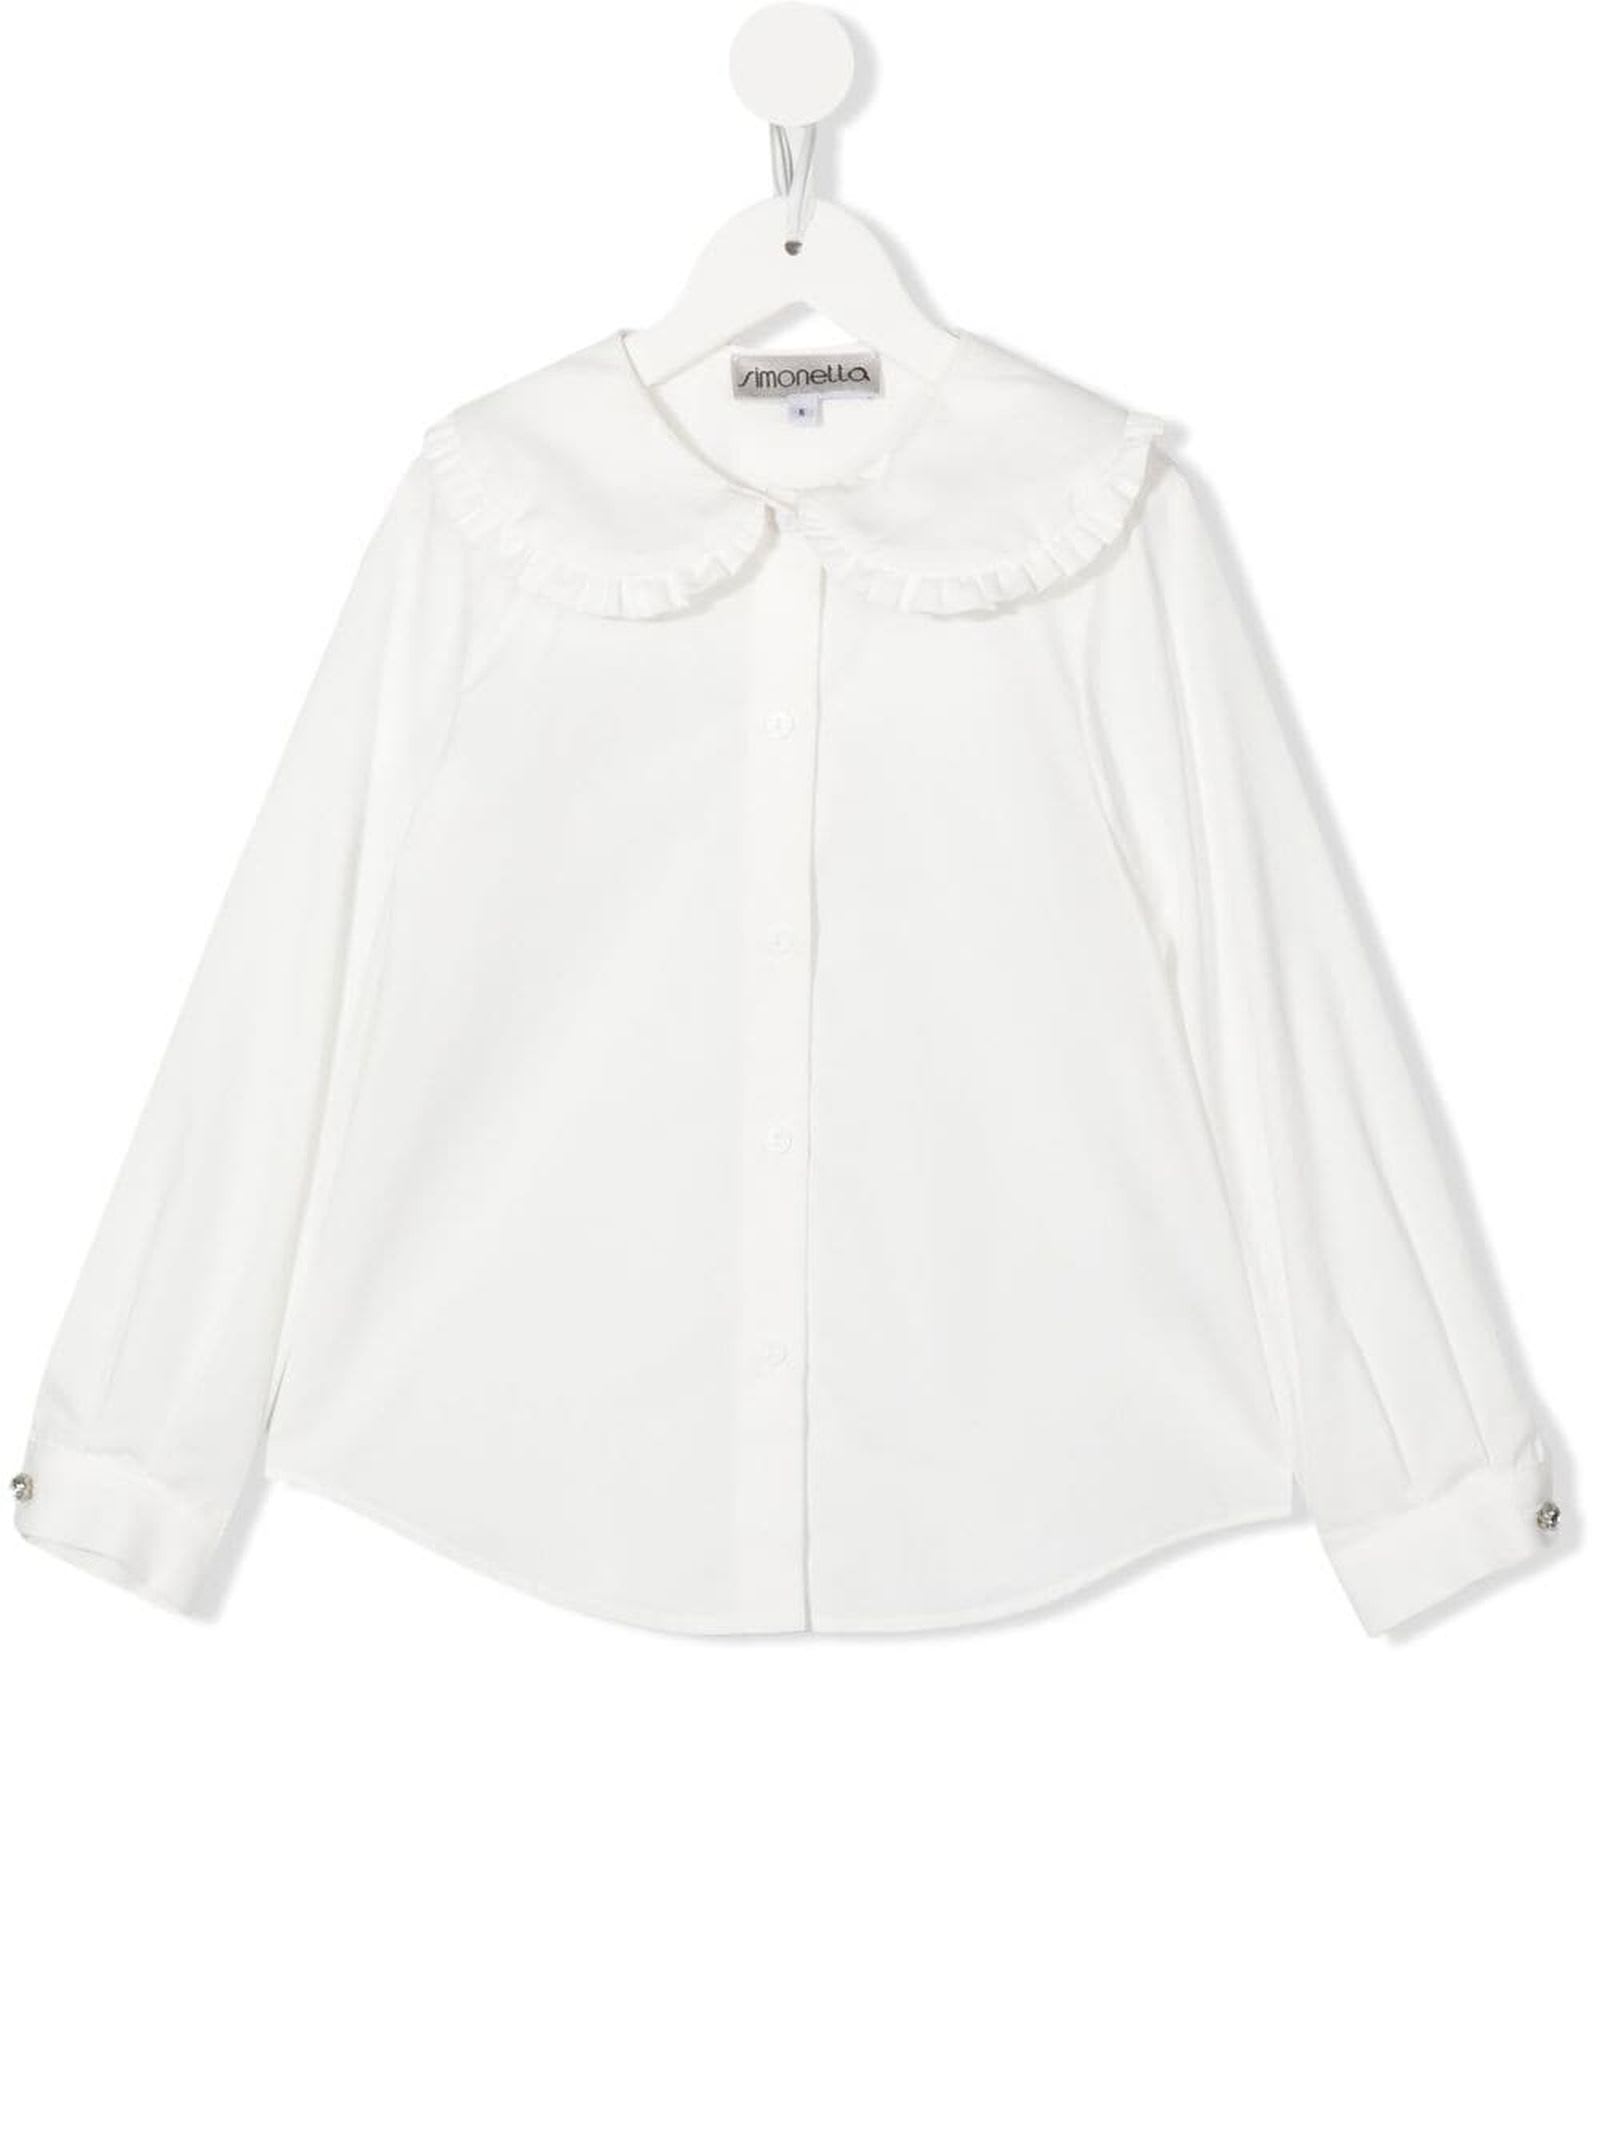 Simonetta White Cotton Shirt